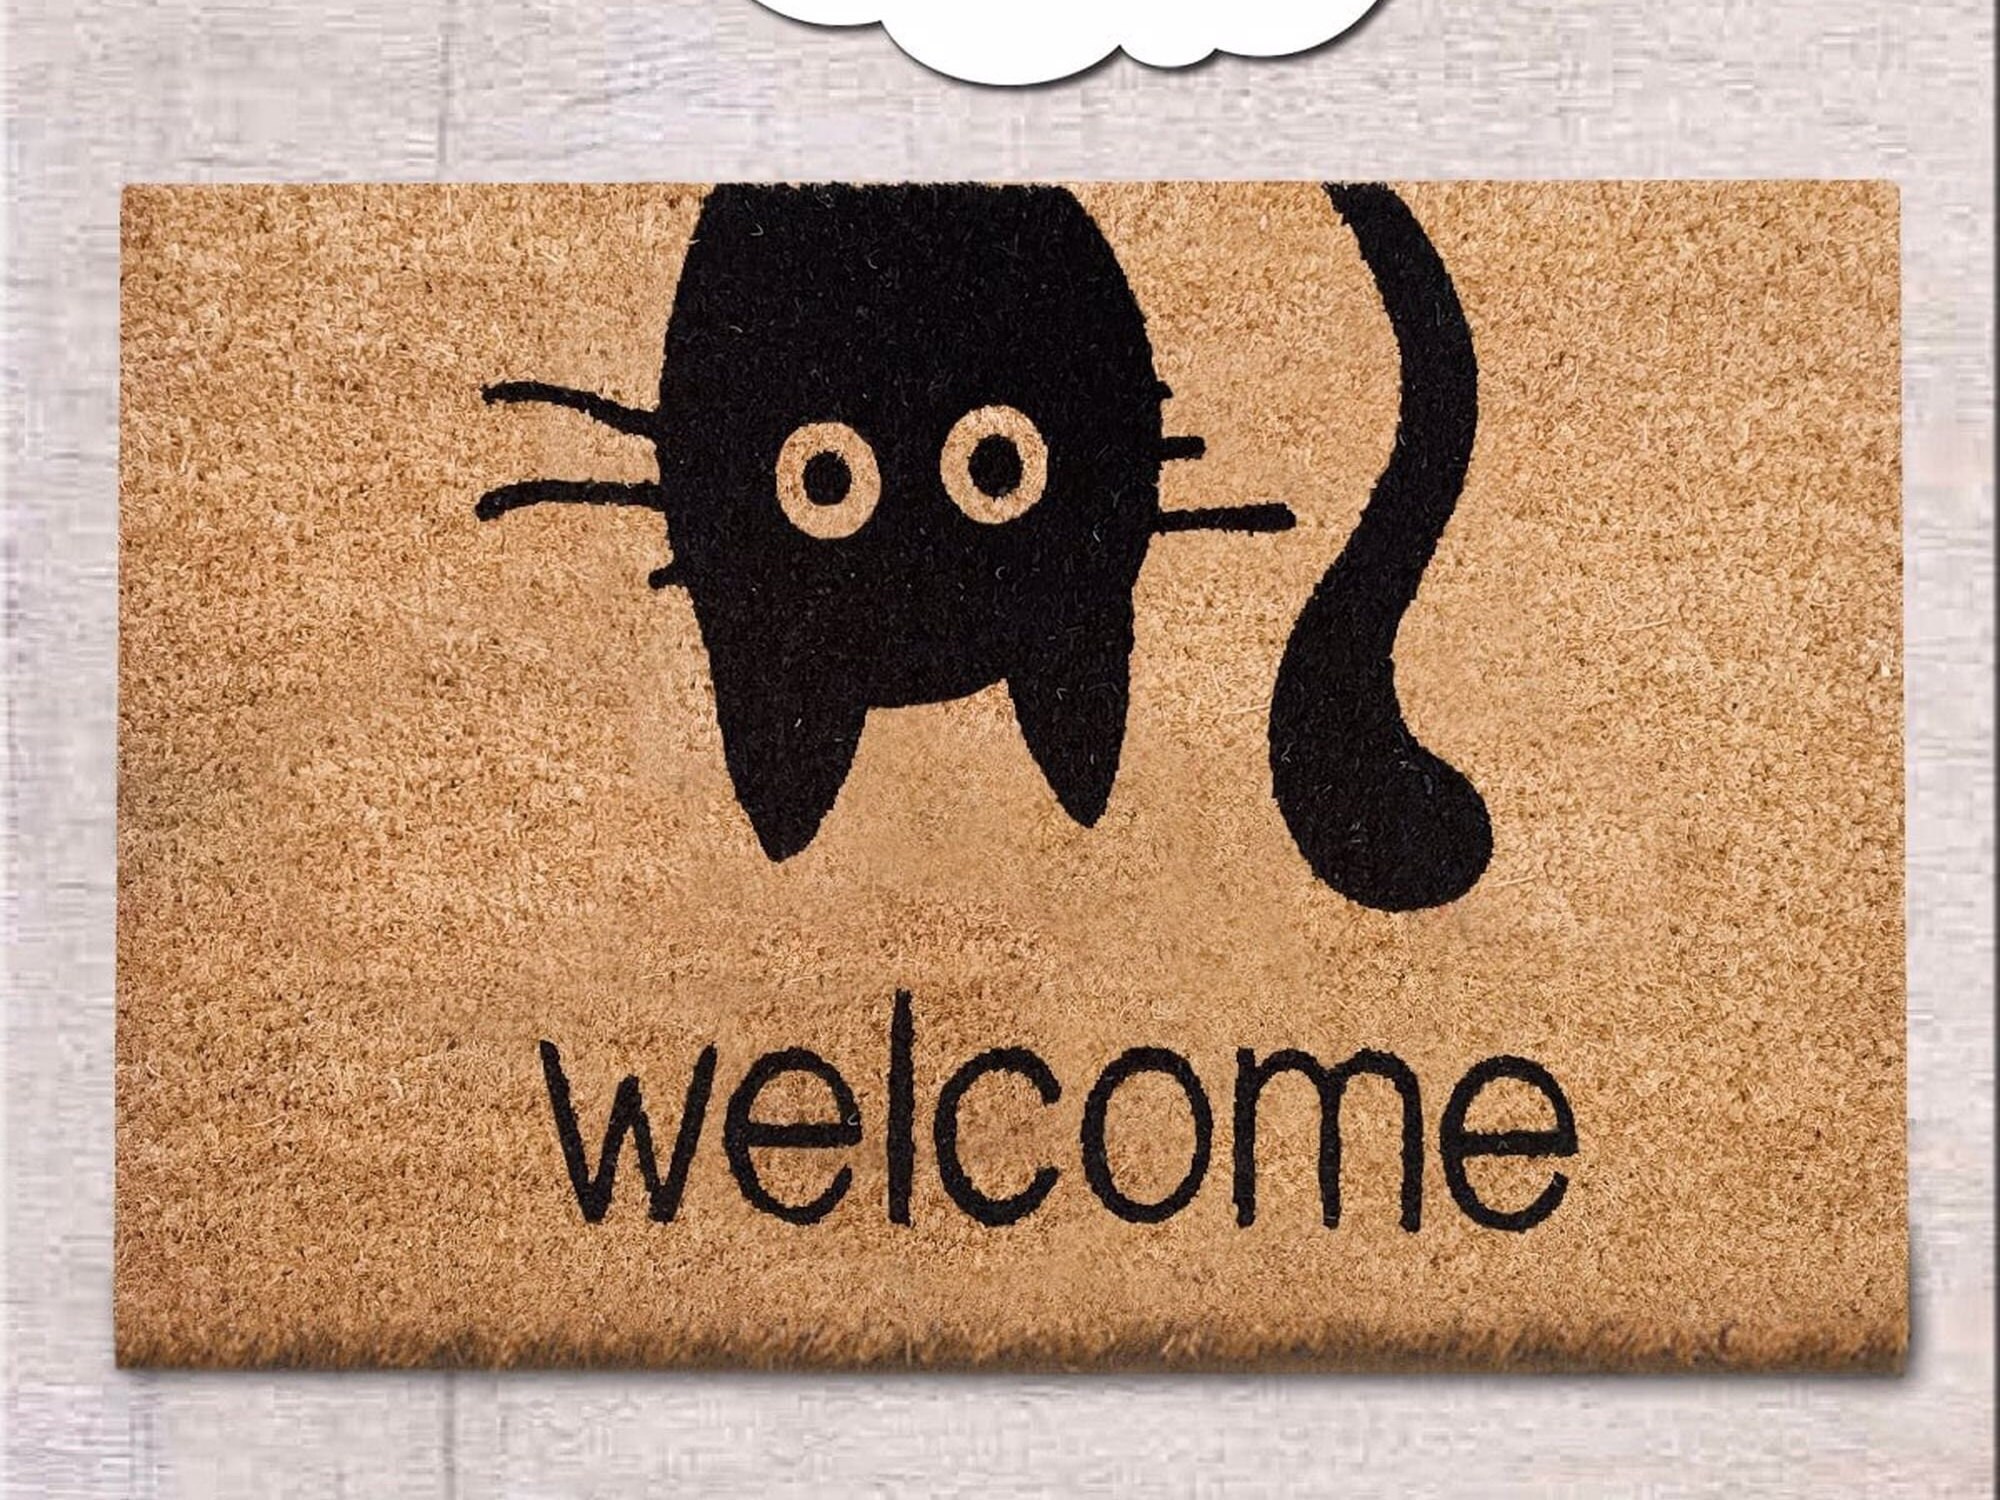 Peeping Cats Handwoven Coconut Fiber Doormat - Entryways